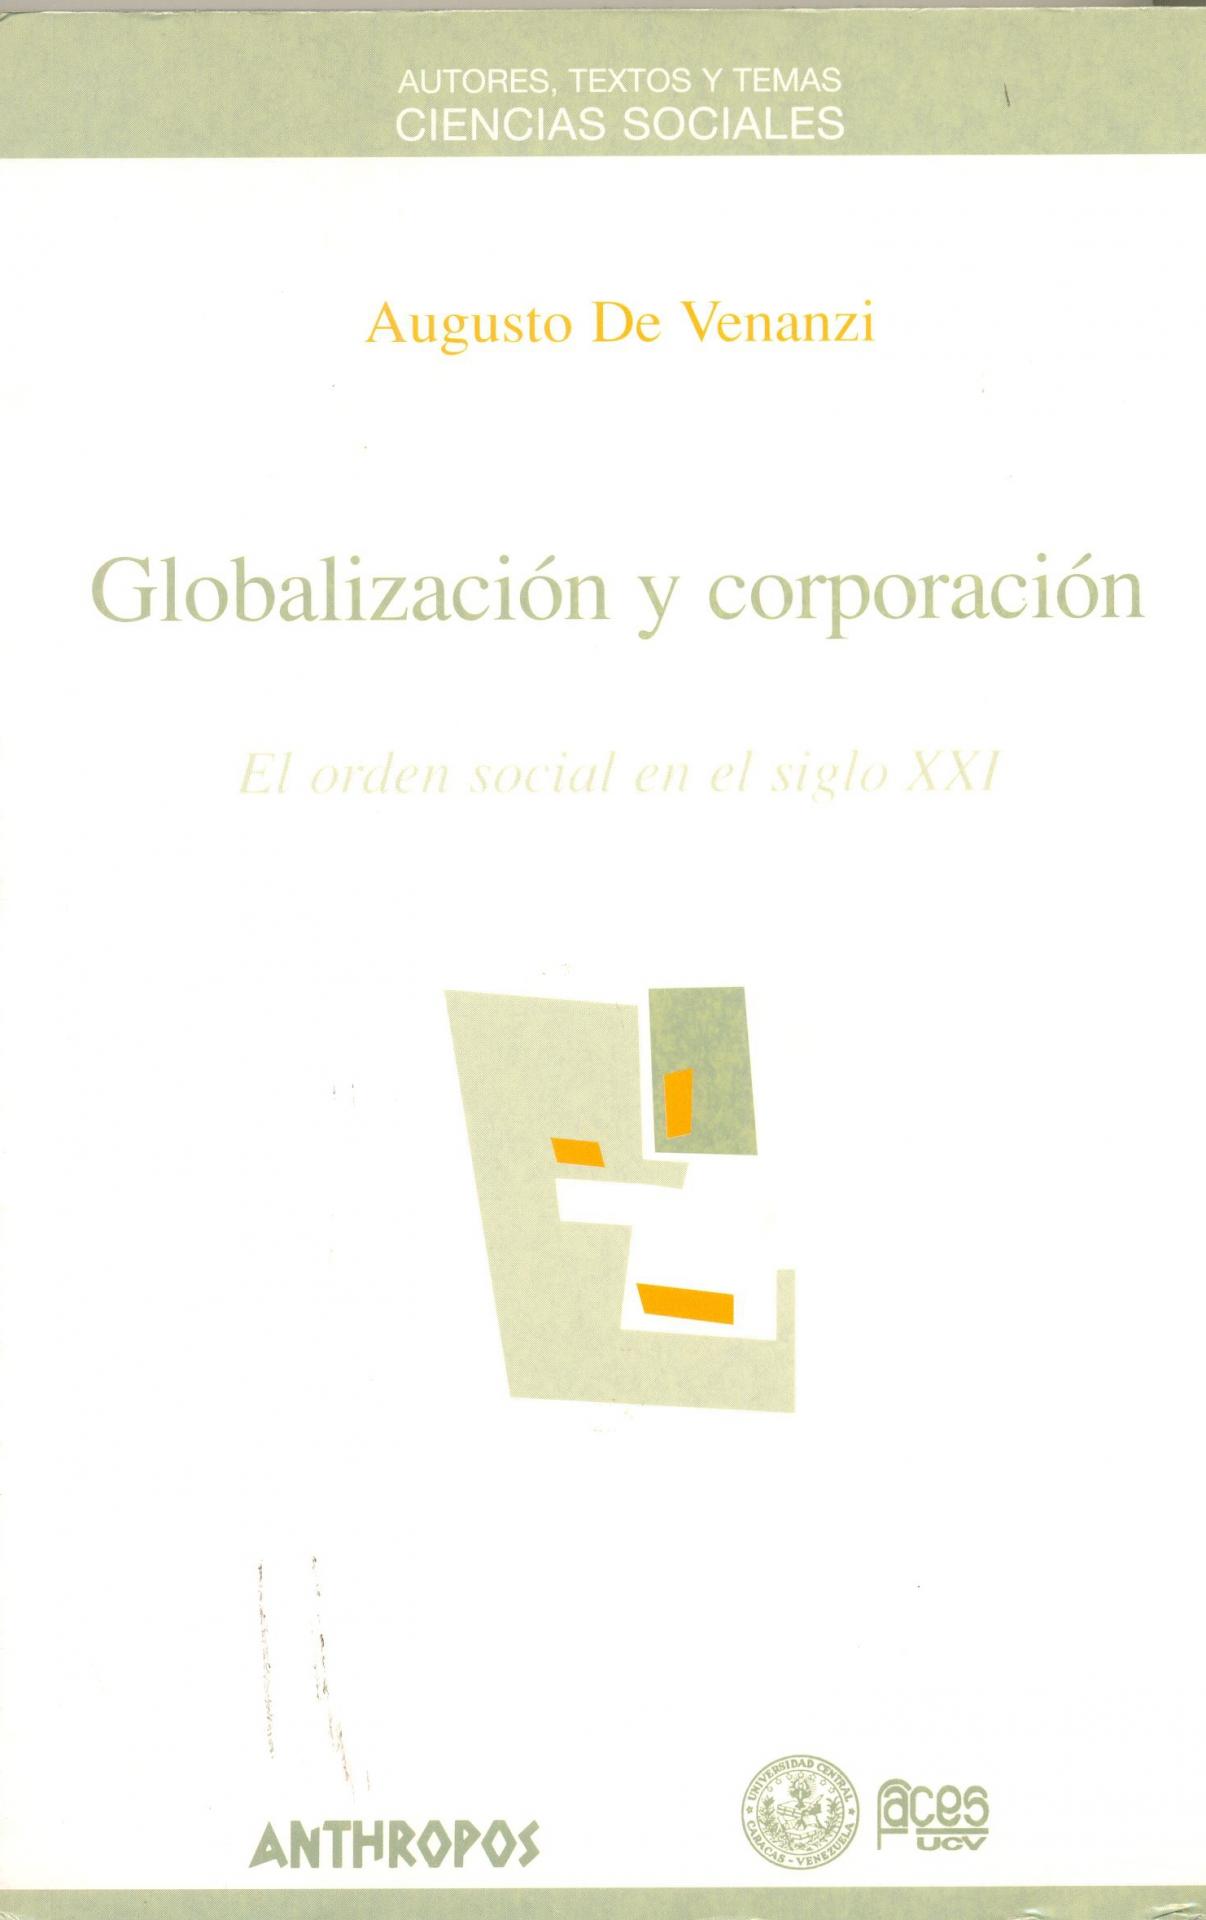 GLOBALIZACIÓN Y CORPORACIÓN. El orden social del siglo XXI. De Venanzi, A.